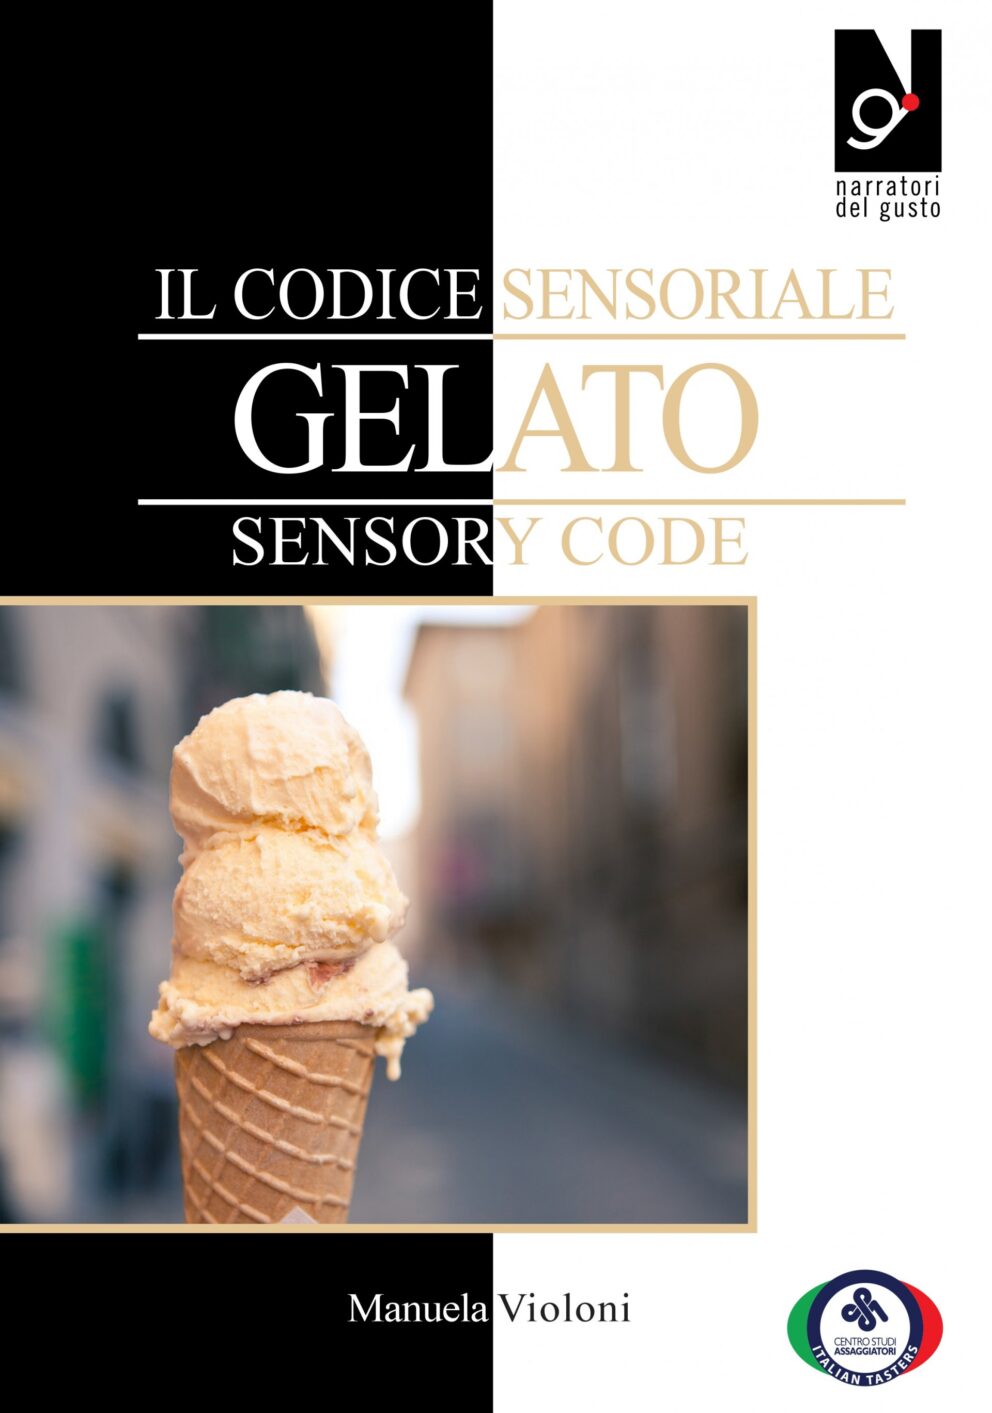 Invito alla lettura: il “Codice sensoriale del gelato”, di Manuela Violoni